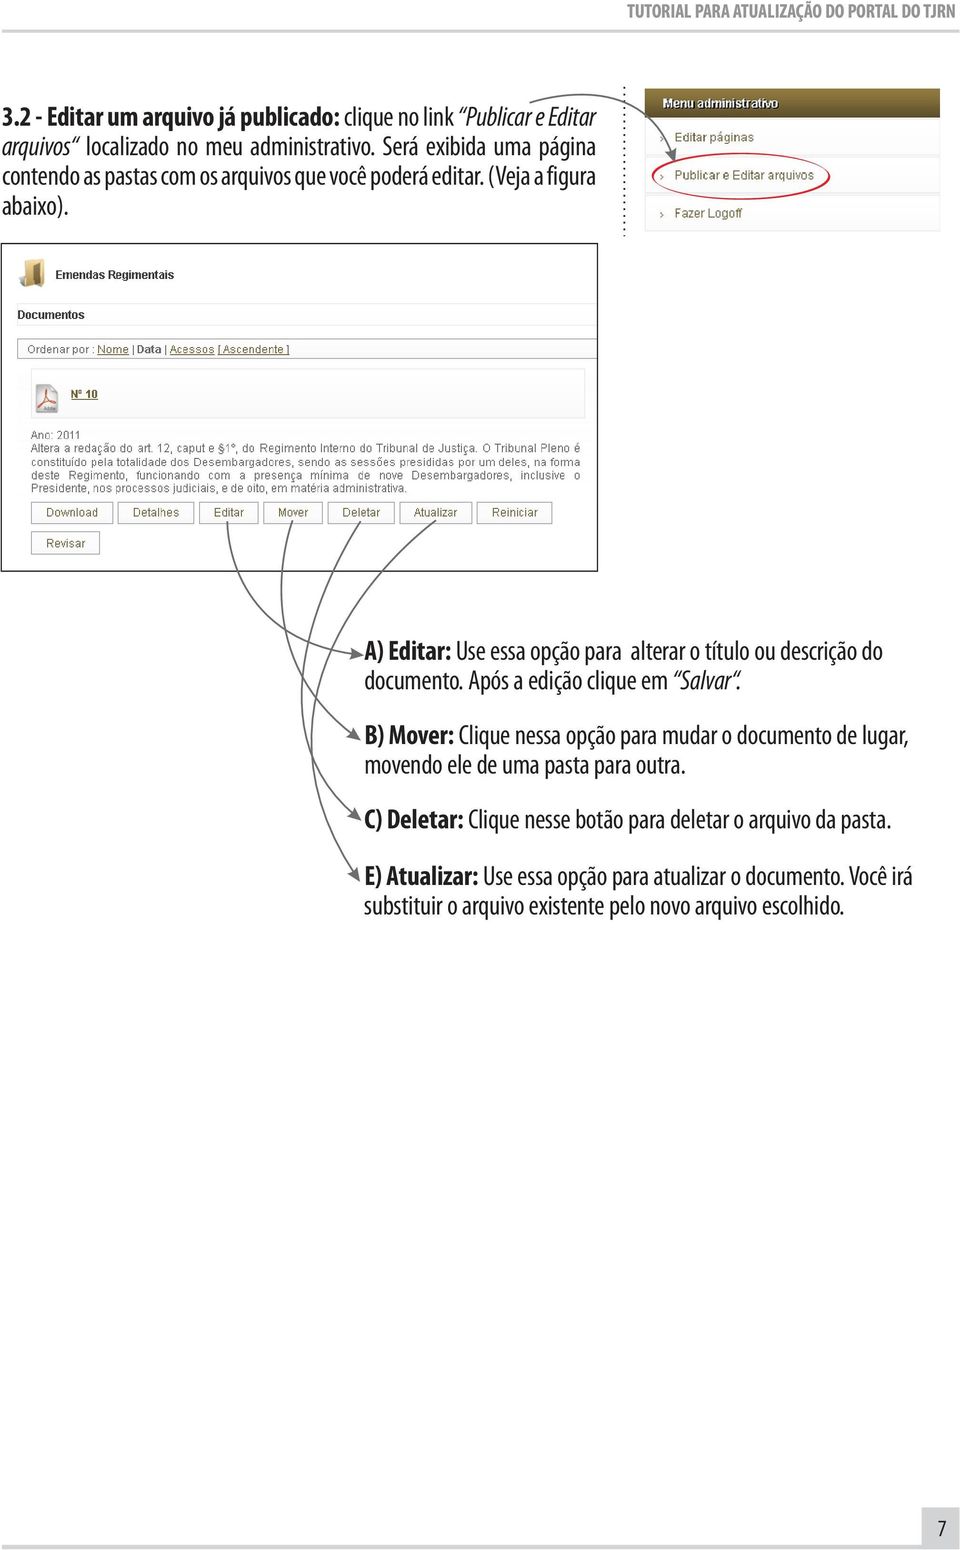 A) Editar: Use essa opção para alterar o título ou descrição do documento. Após a edição clique em Salvar.